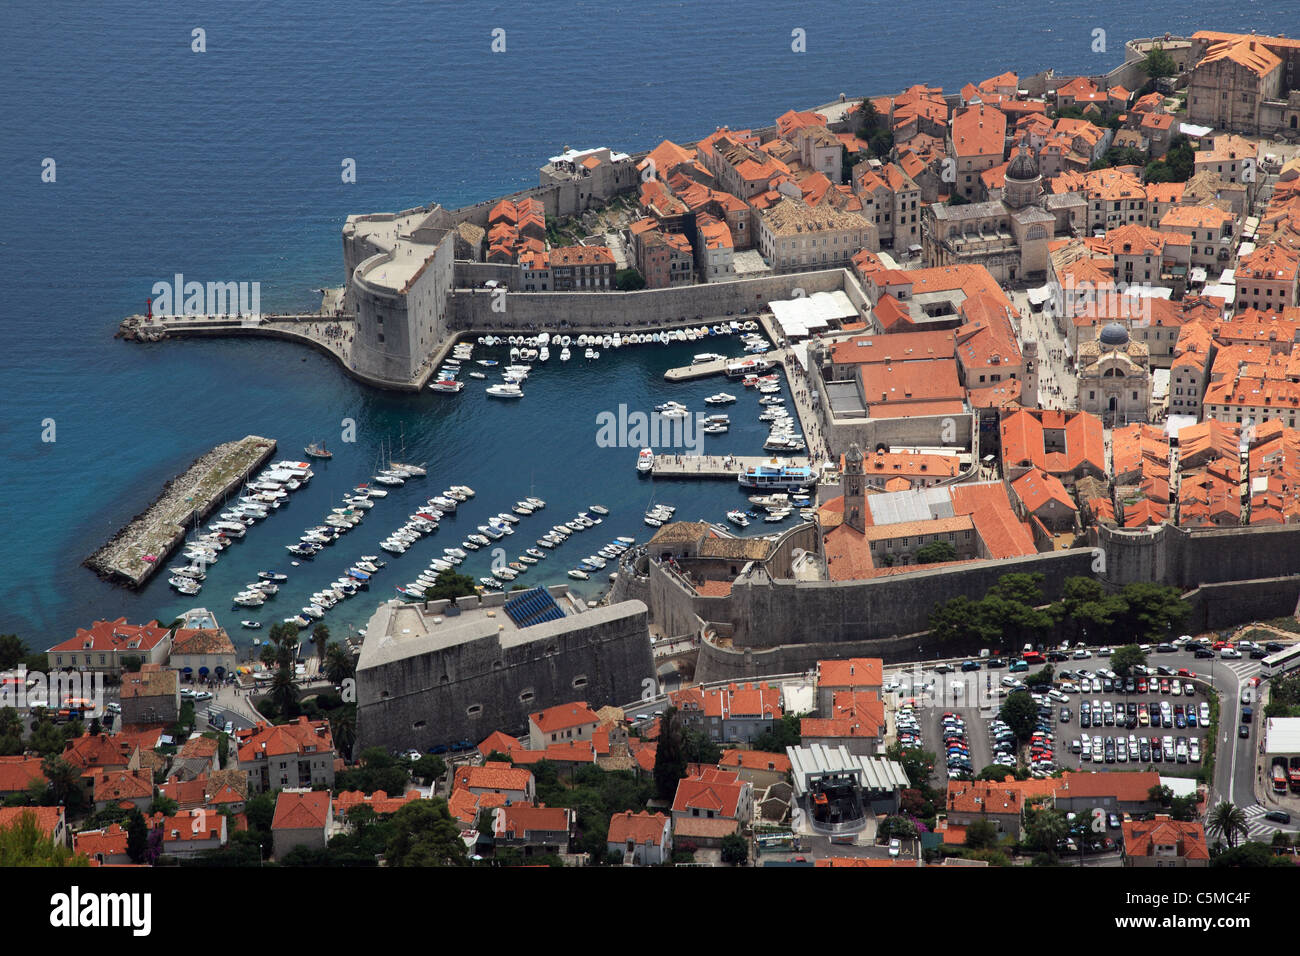 Vista aérea de la ciudad vieja de Dubrovnik, el puerto y el mar, Croacia Foto de stock